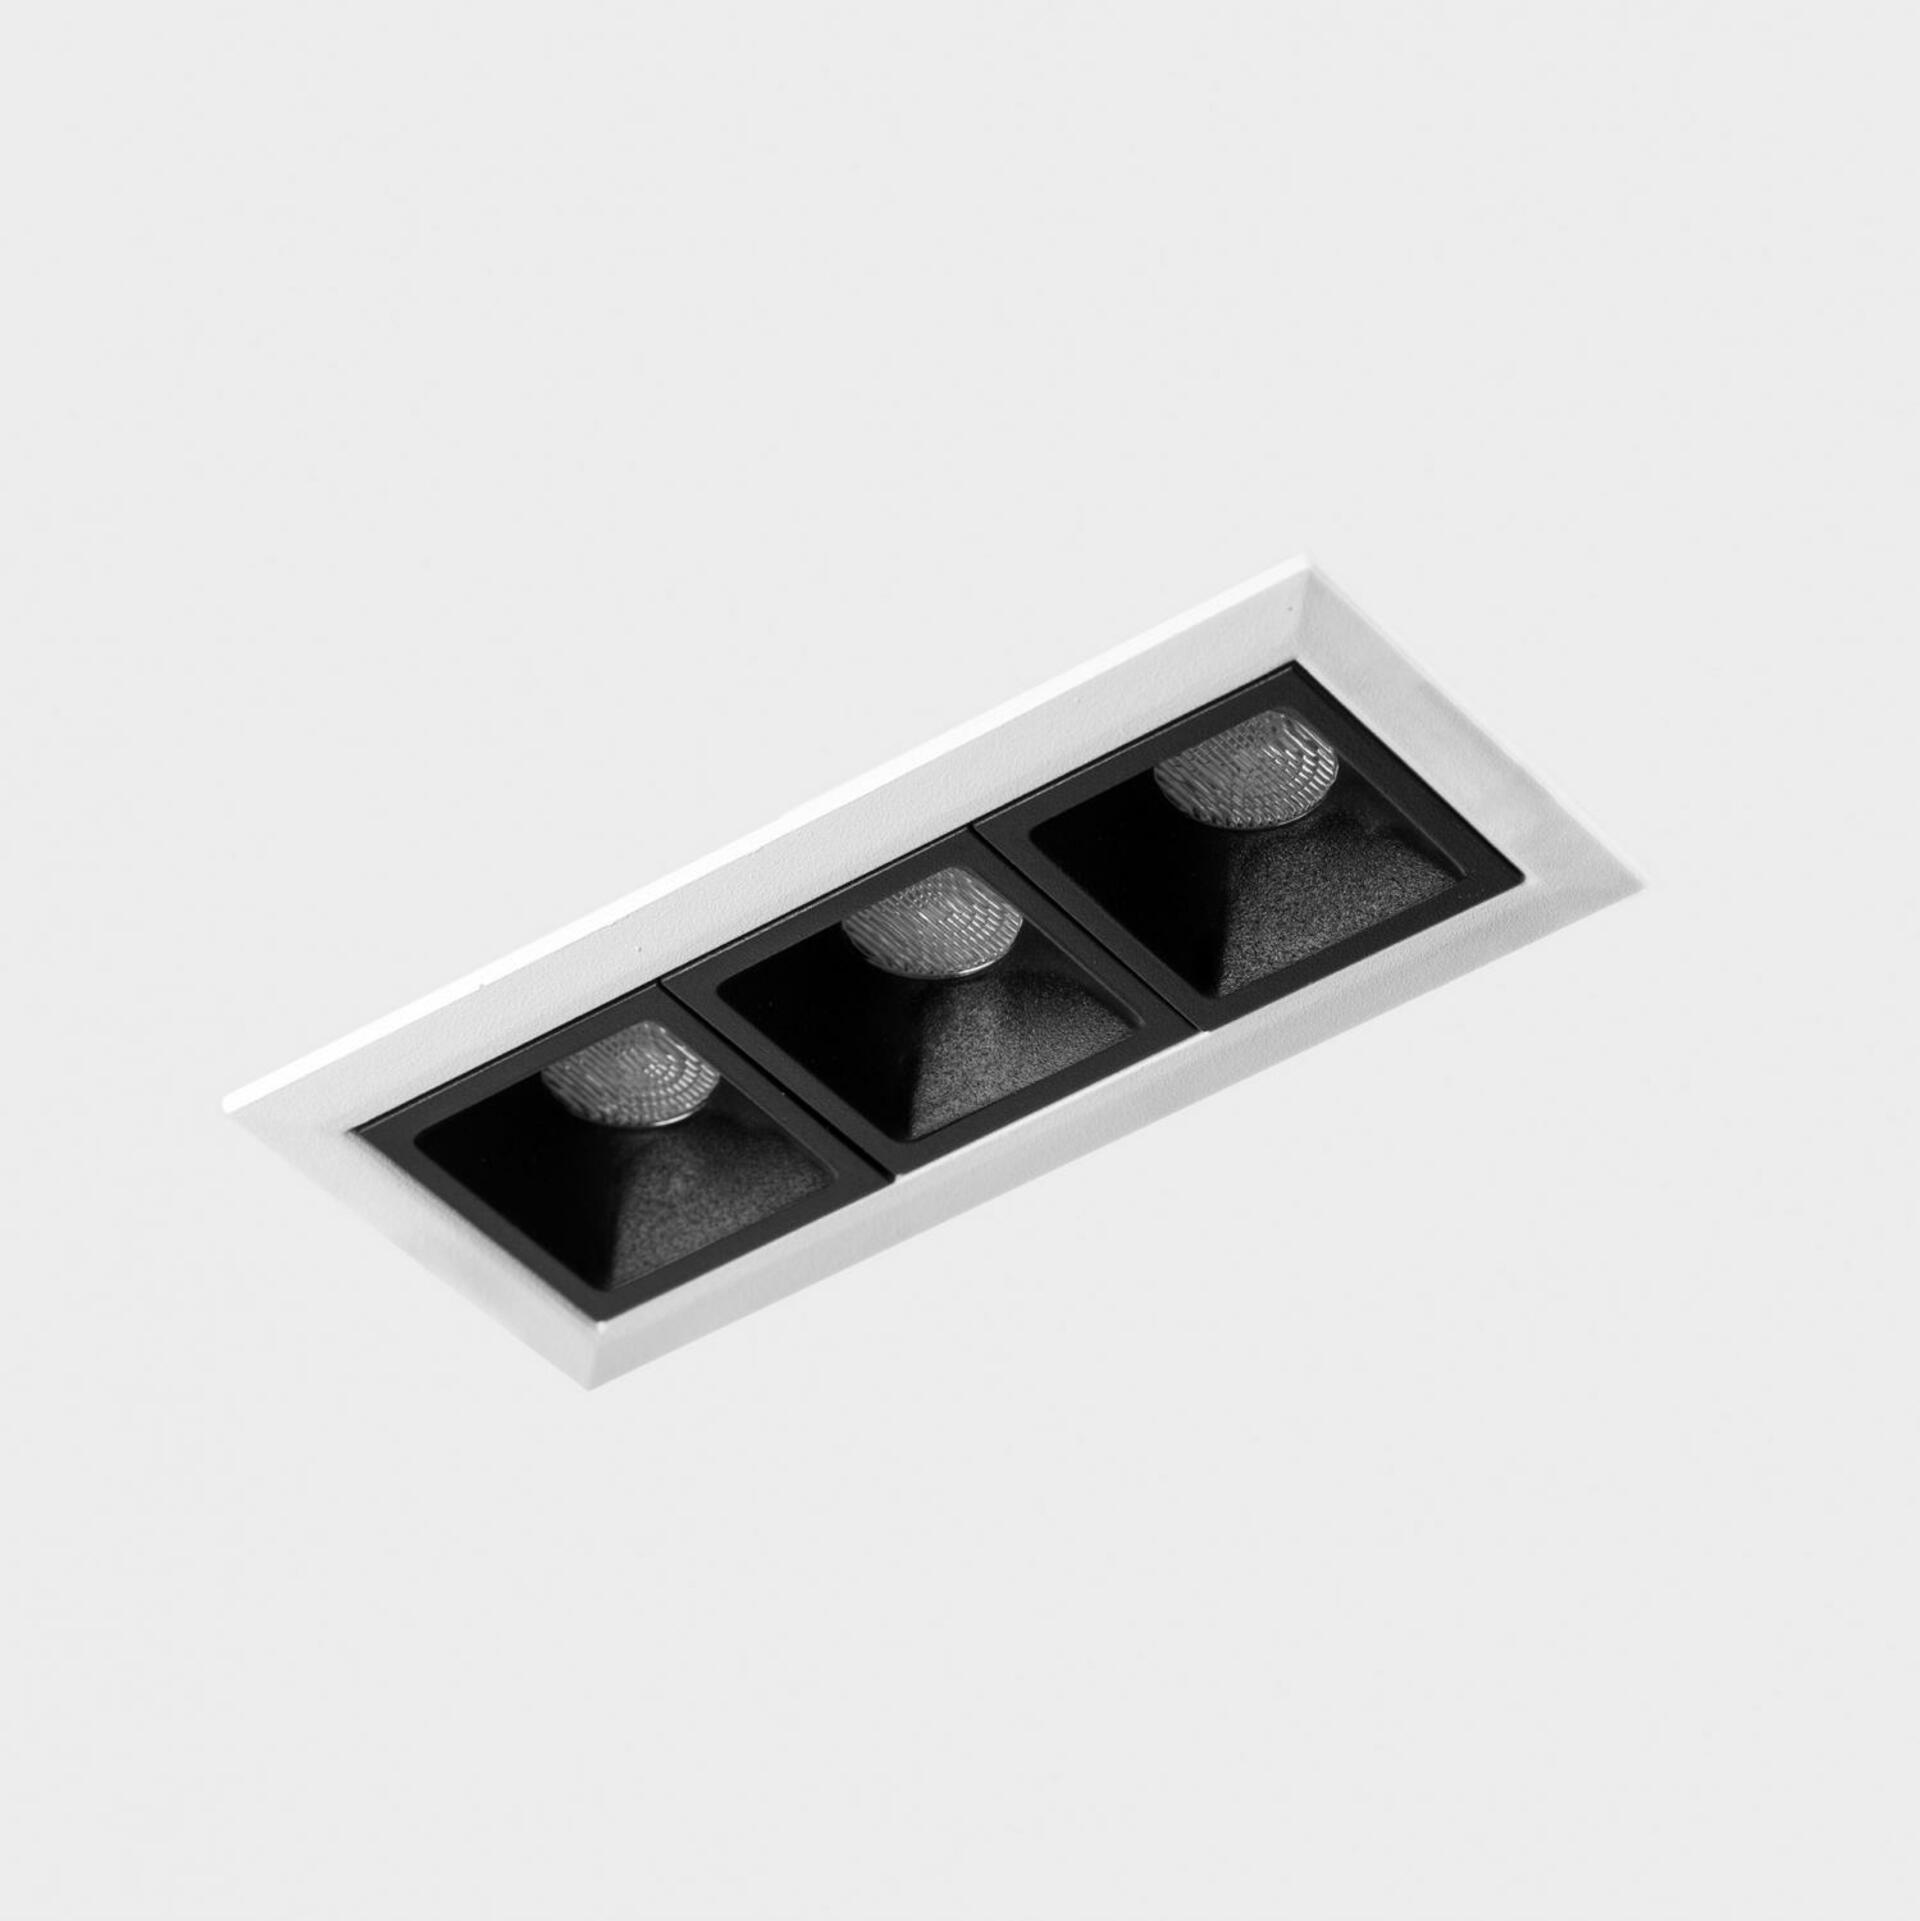 KOHL LIGHTING KOHL-Lighting NSES zapuštěné svítidlo s rámečkem 105x45 mm bílá-černá 6 W CRI 90 2700K DALI